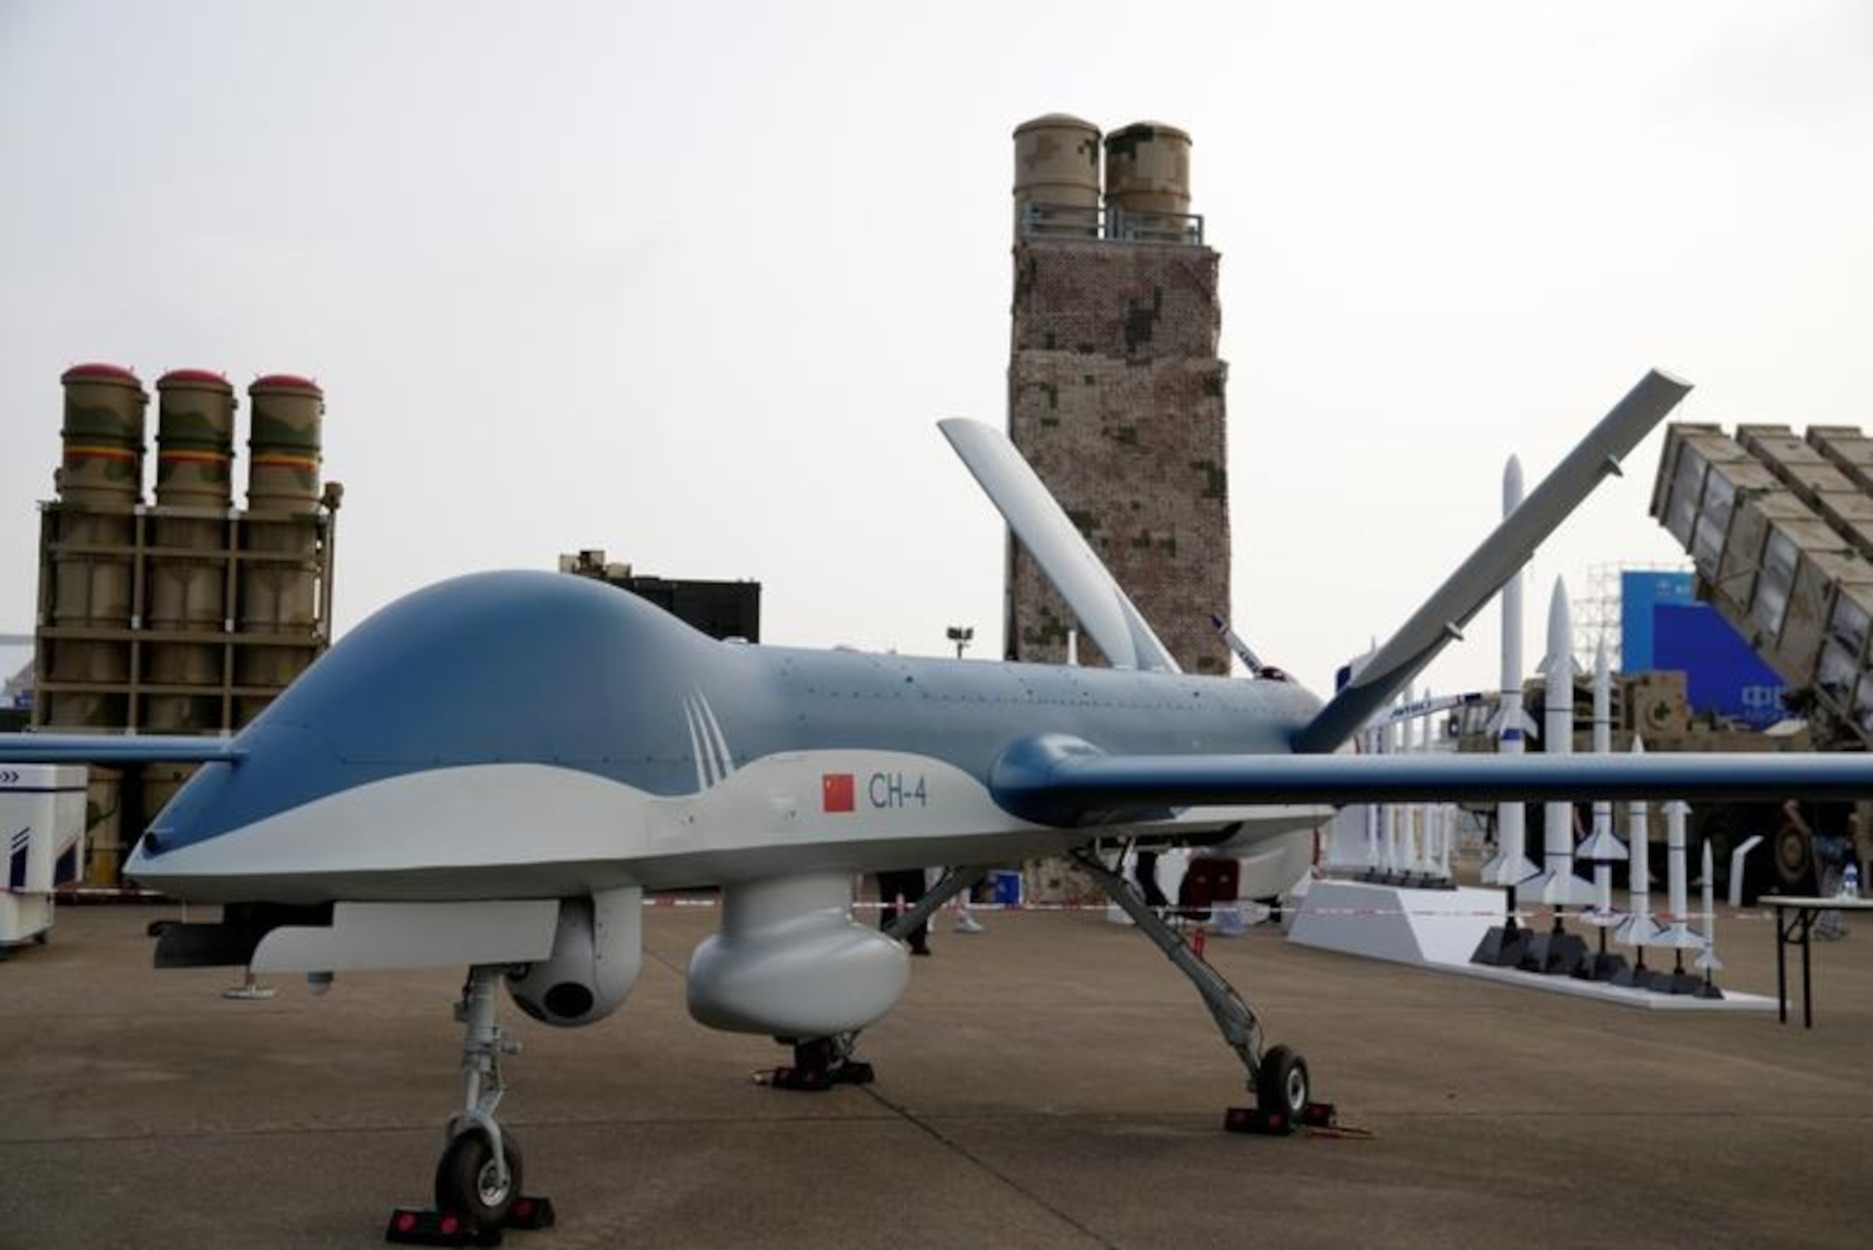 Ρωσία: «Σιγή ιχθύος» για τα περί αποστολής κινέζικων drones – Το σχόλιο για το σχέδιο ειρήνης του Πεκίνου